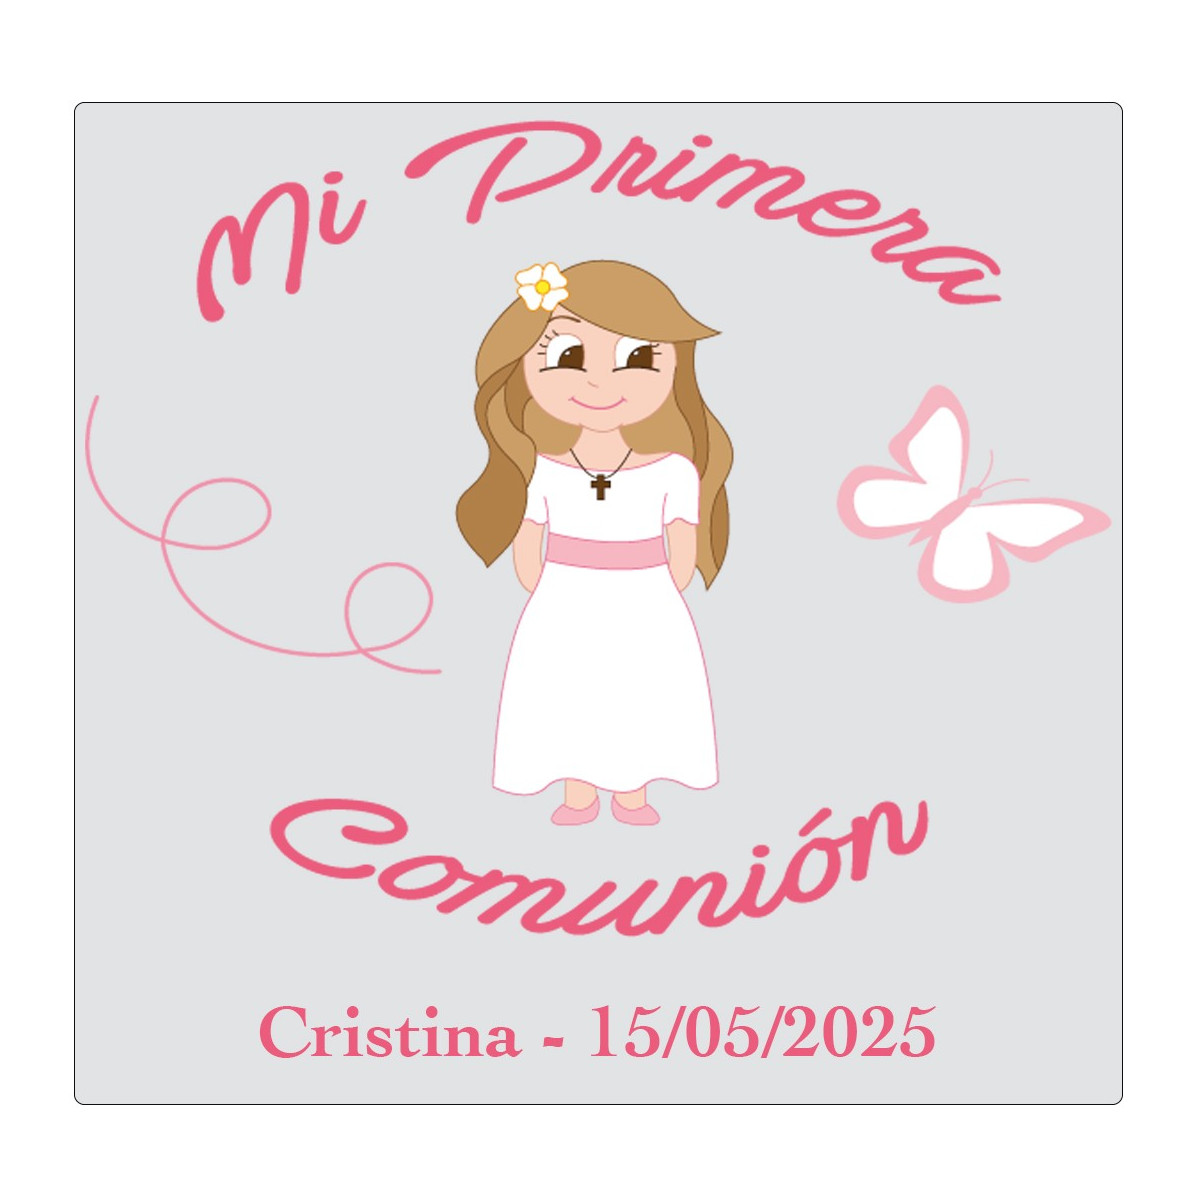 Adesivo de comunhão personalizado para menina com nome e data